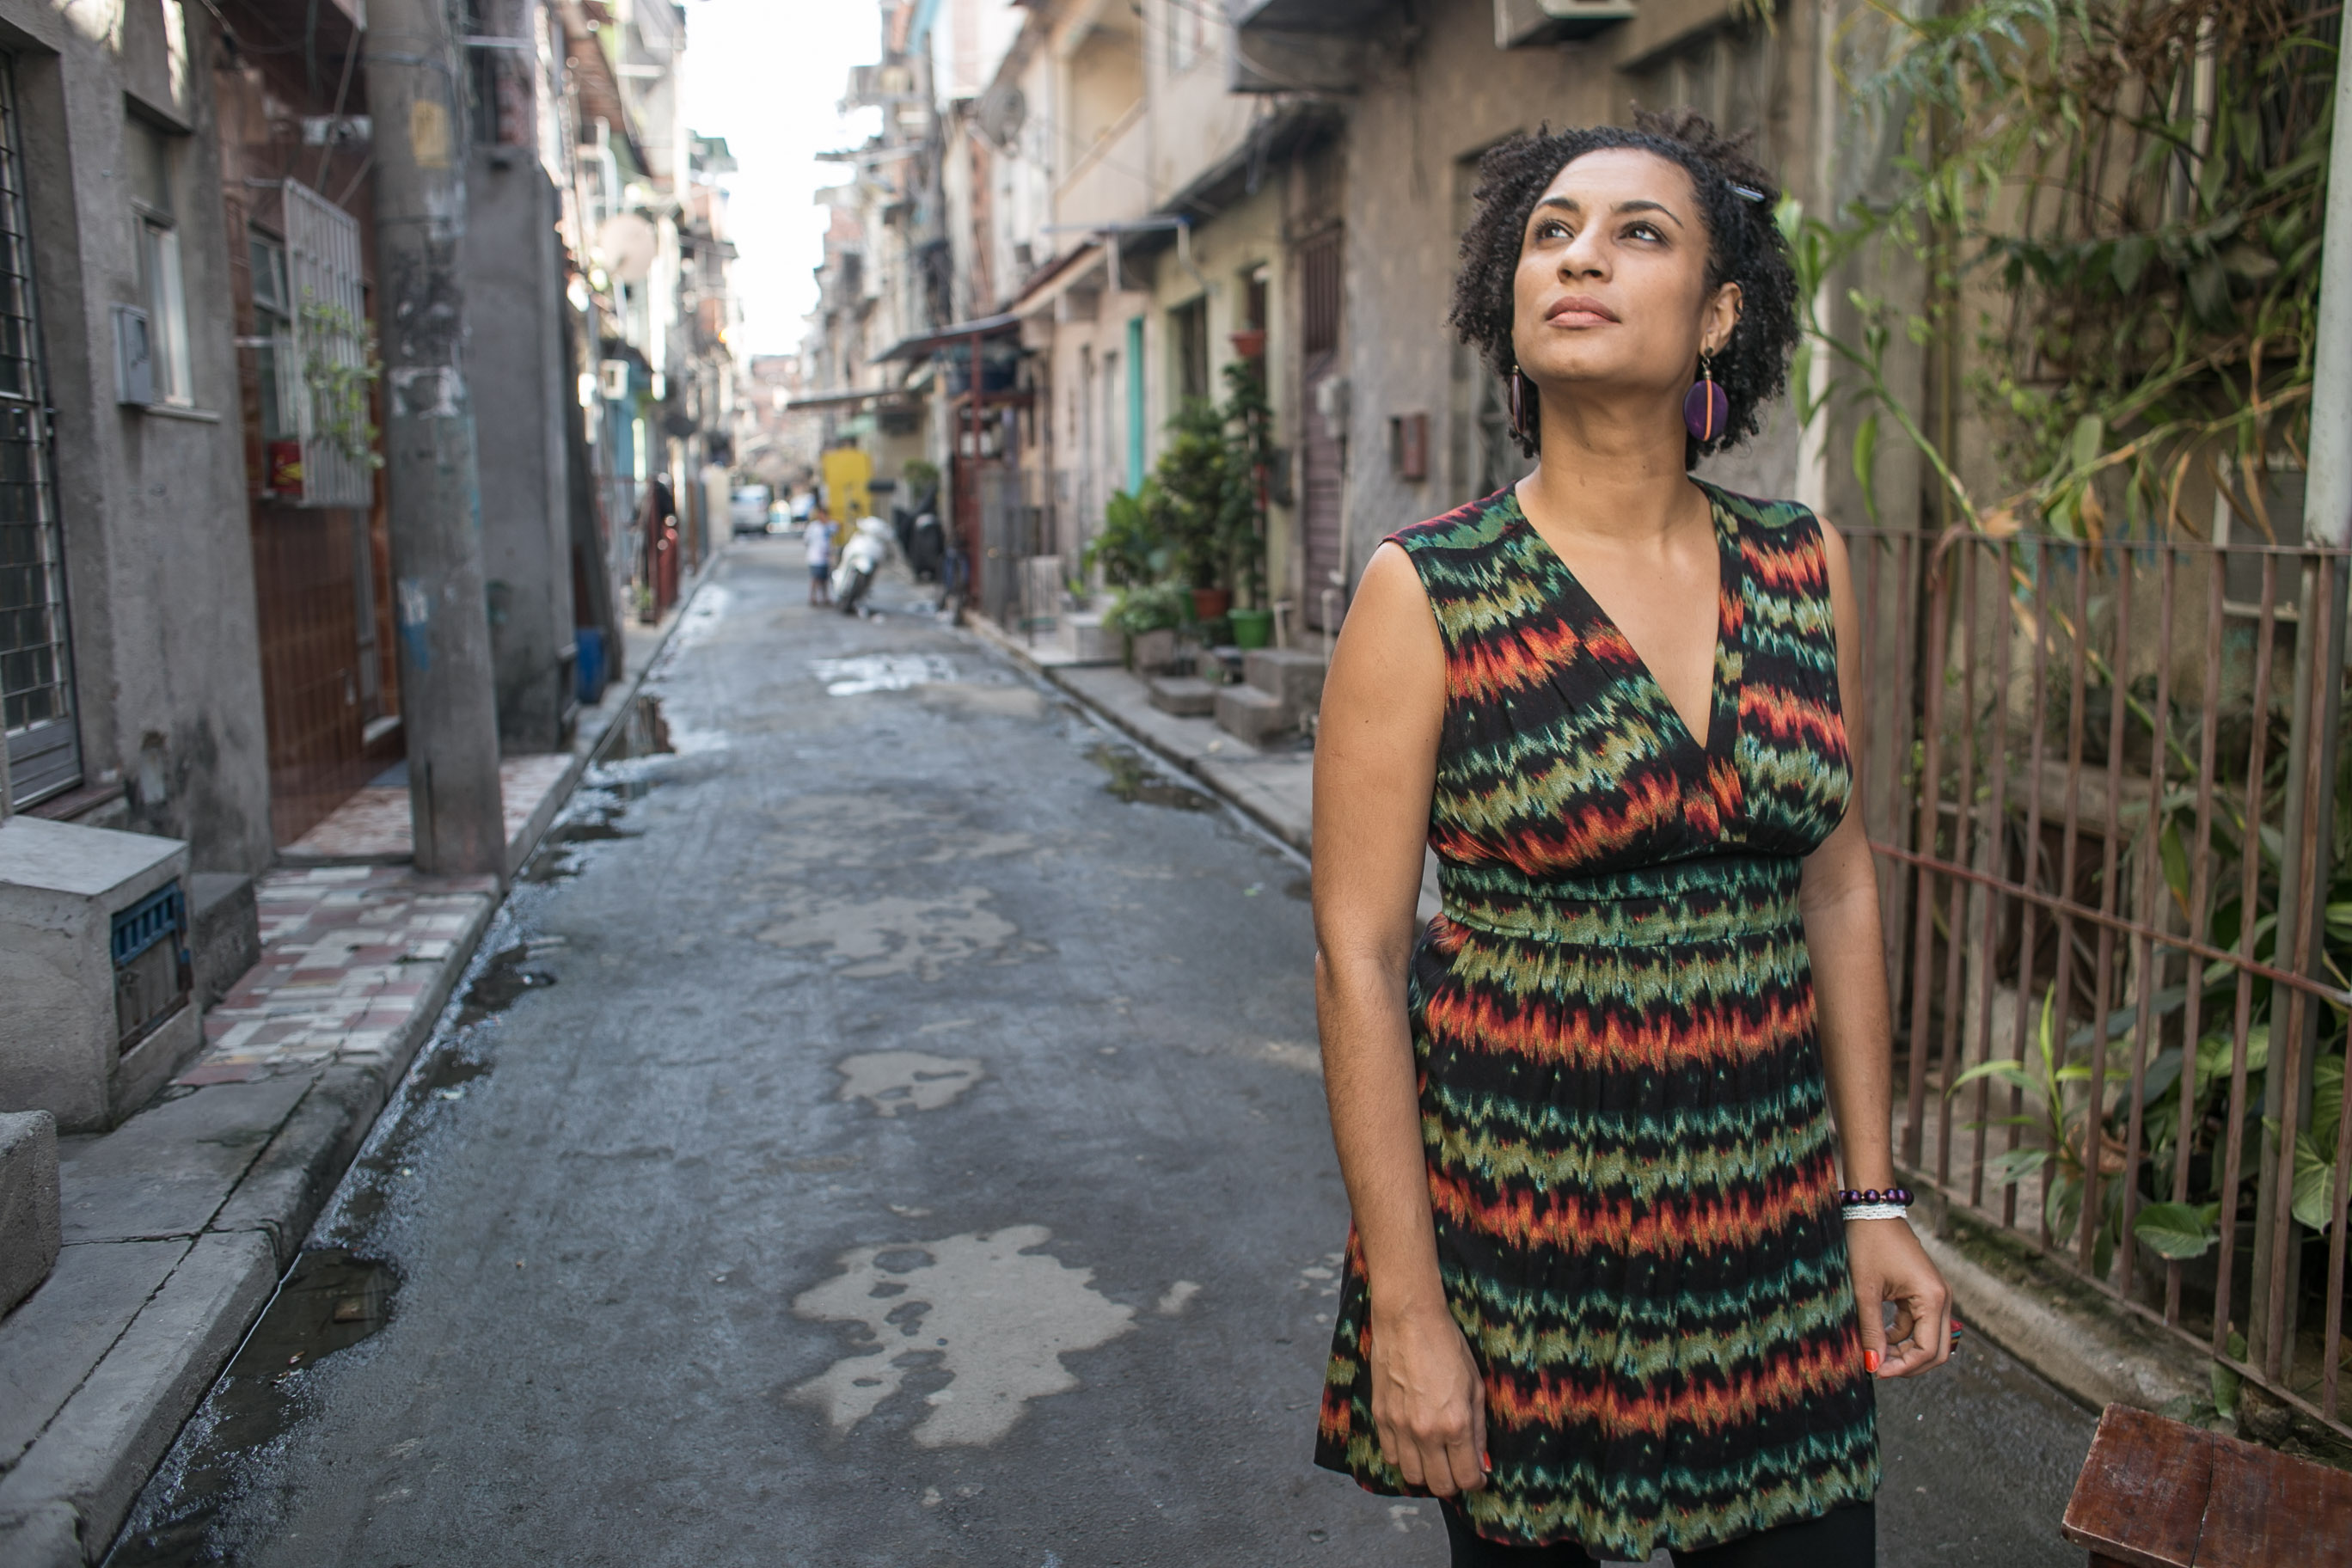 Marielle Franco, vereadora do Rio e ativista dos direitos humanos, foi assassinada no dia 14 de março de 2018. Nascida no Complexo da Maré, mestre em sociologia, Marielle se destacou como militante em prol das mulheres negras e dos moradores das favelas e periferias.
 
Foto: Mídia NINJA